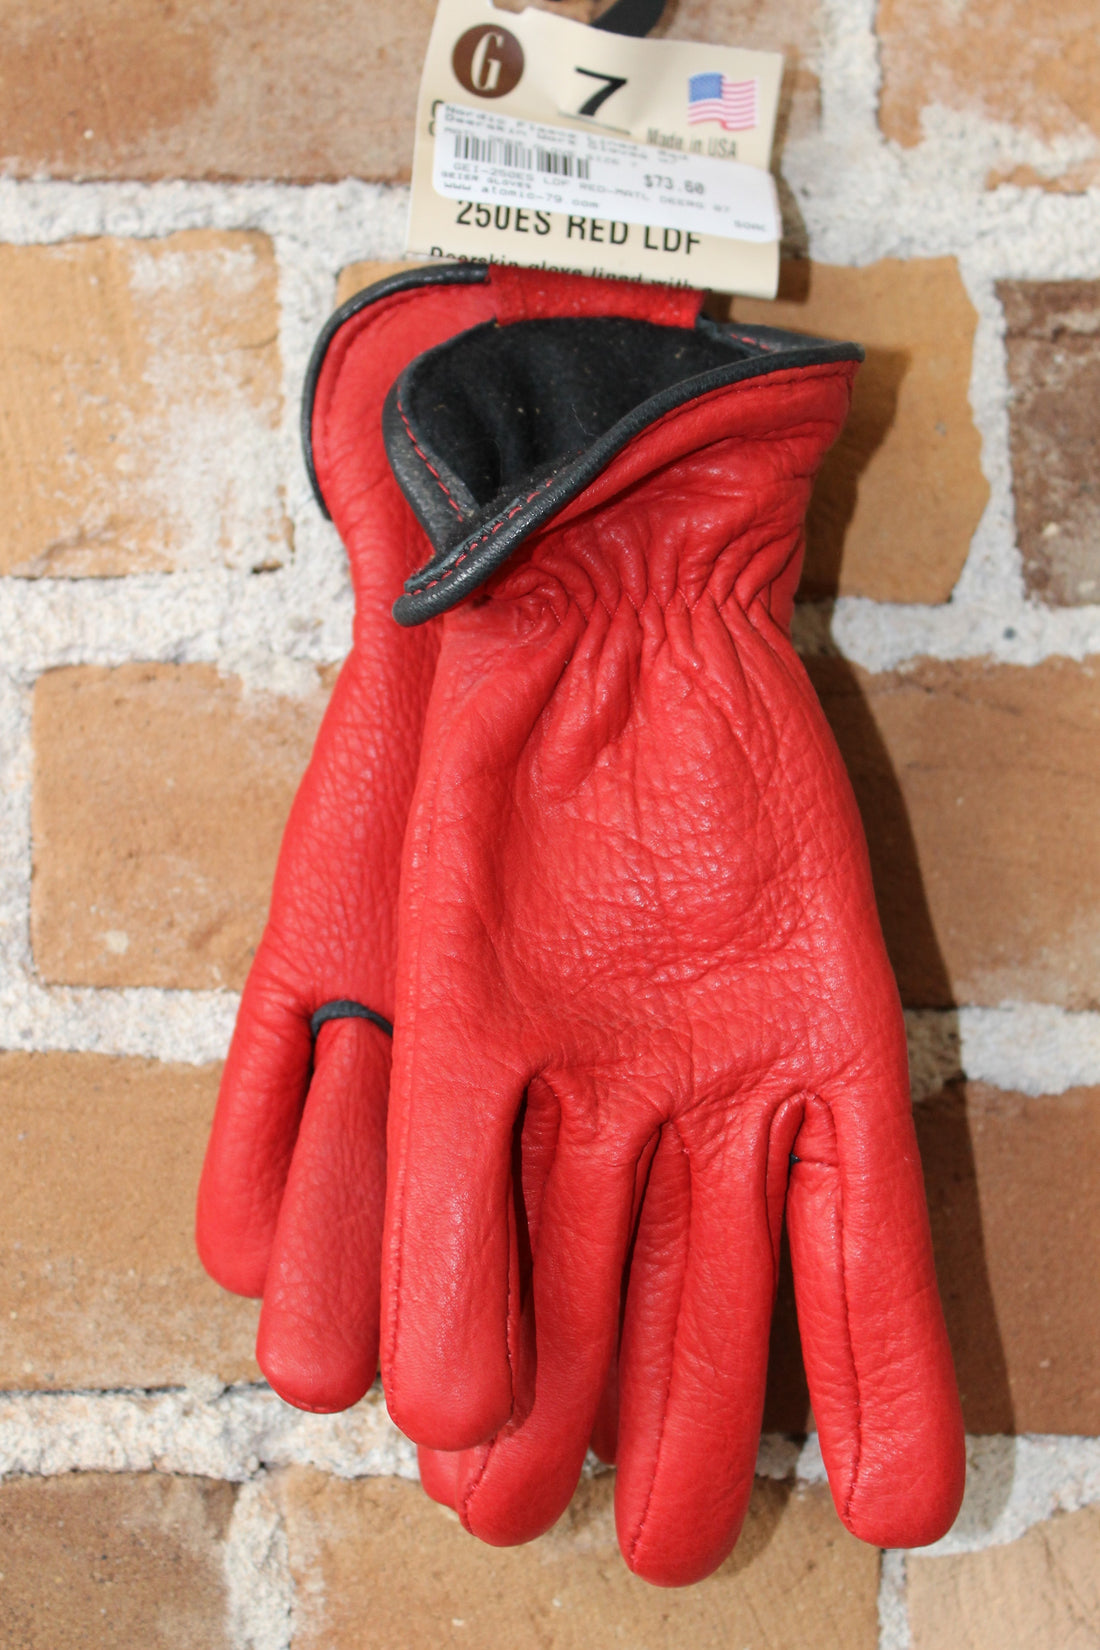 Light Weight Deerskin Work Glove In Red view of gloves